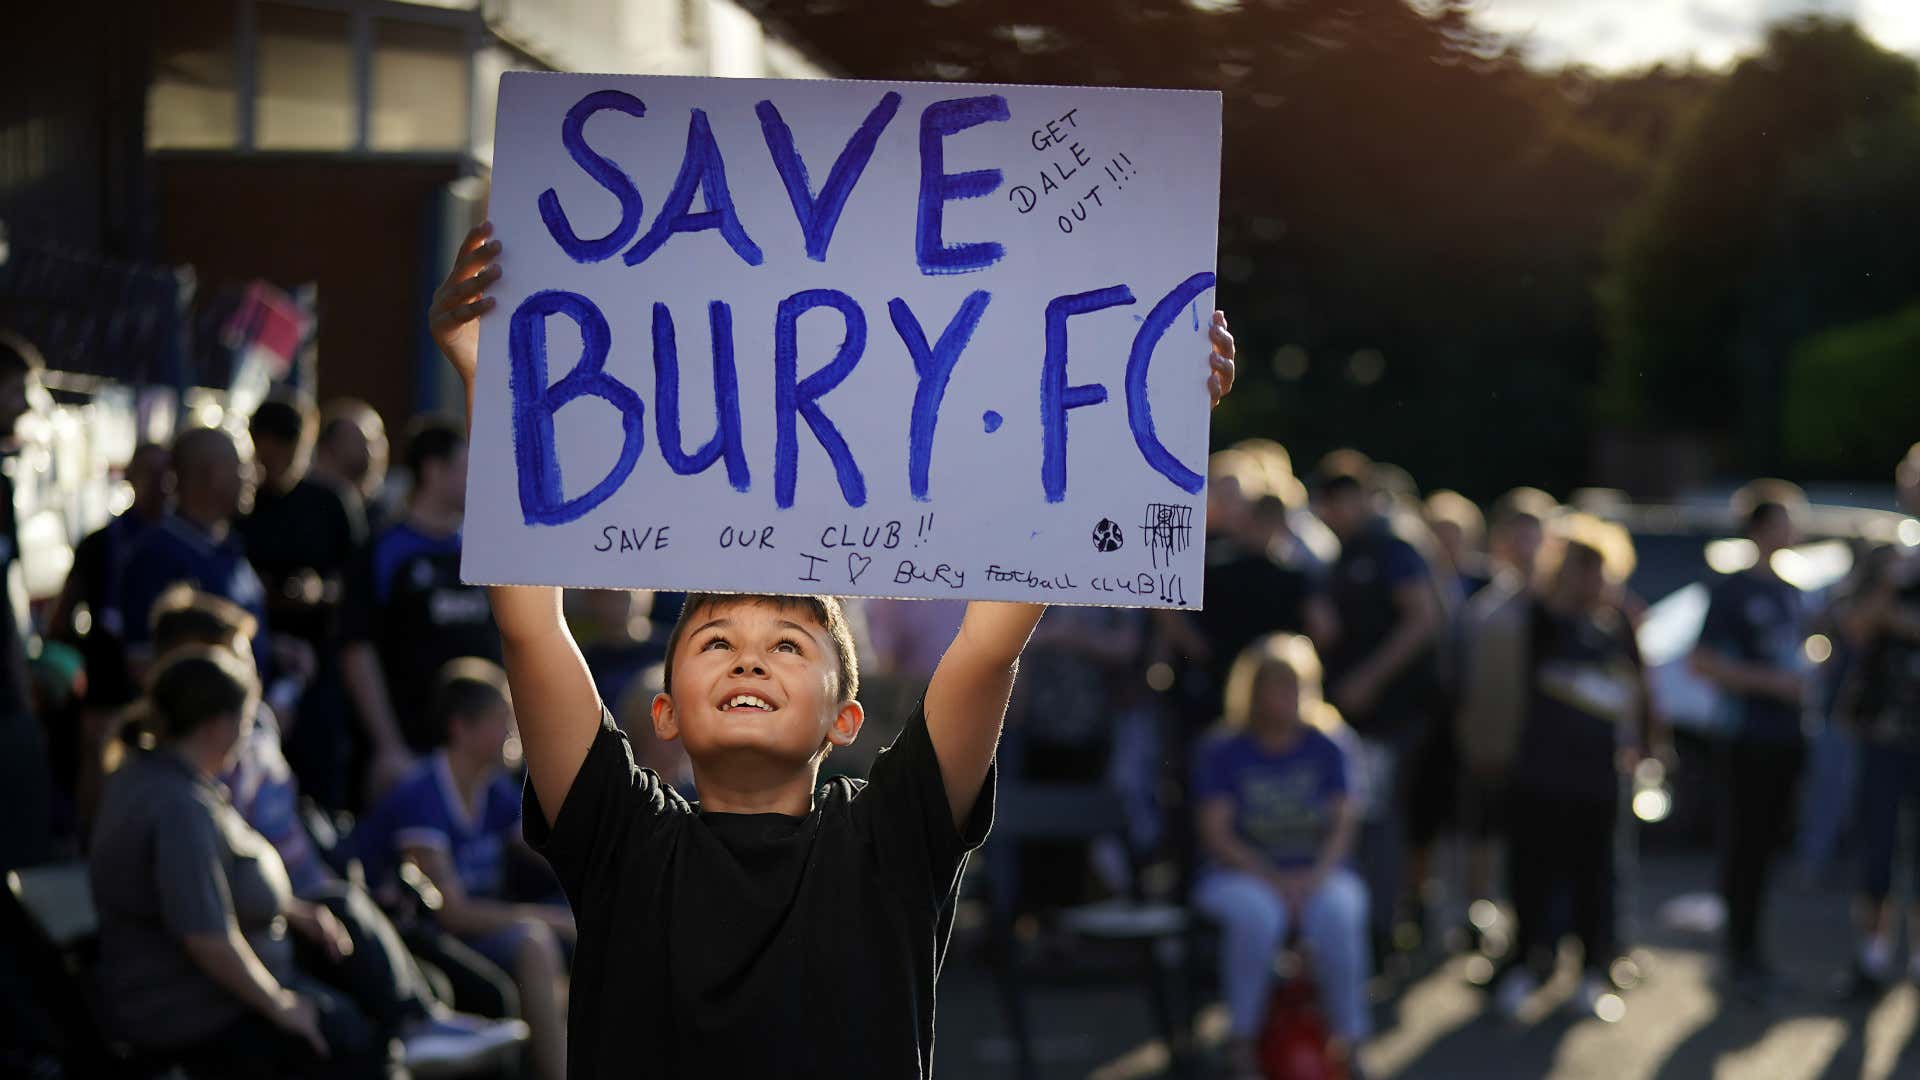 Bury fans 2019